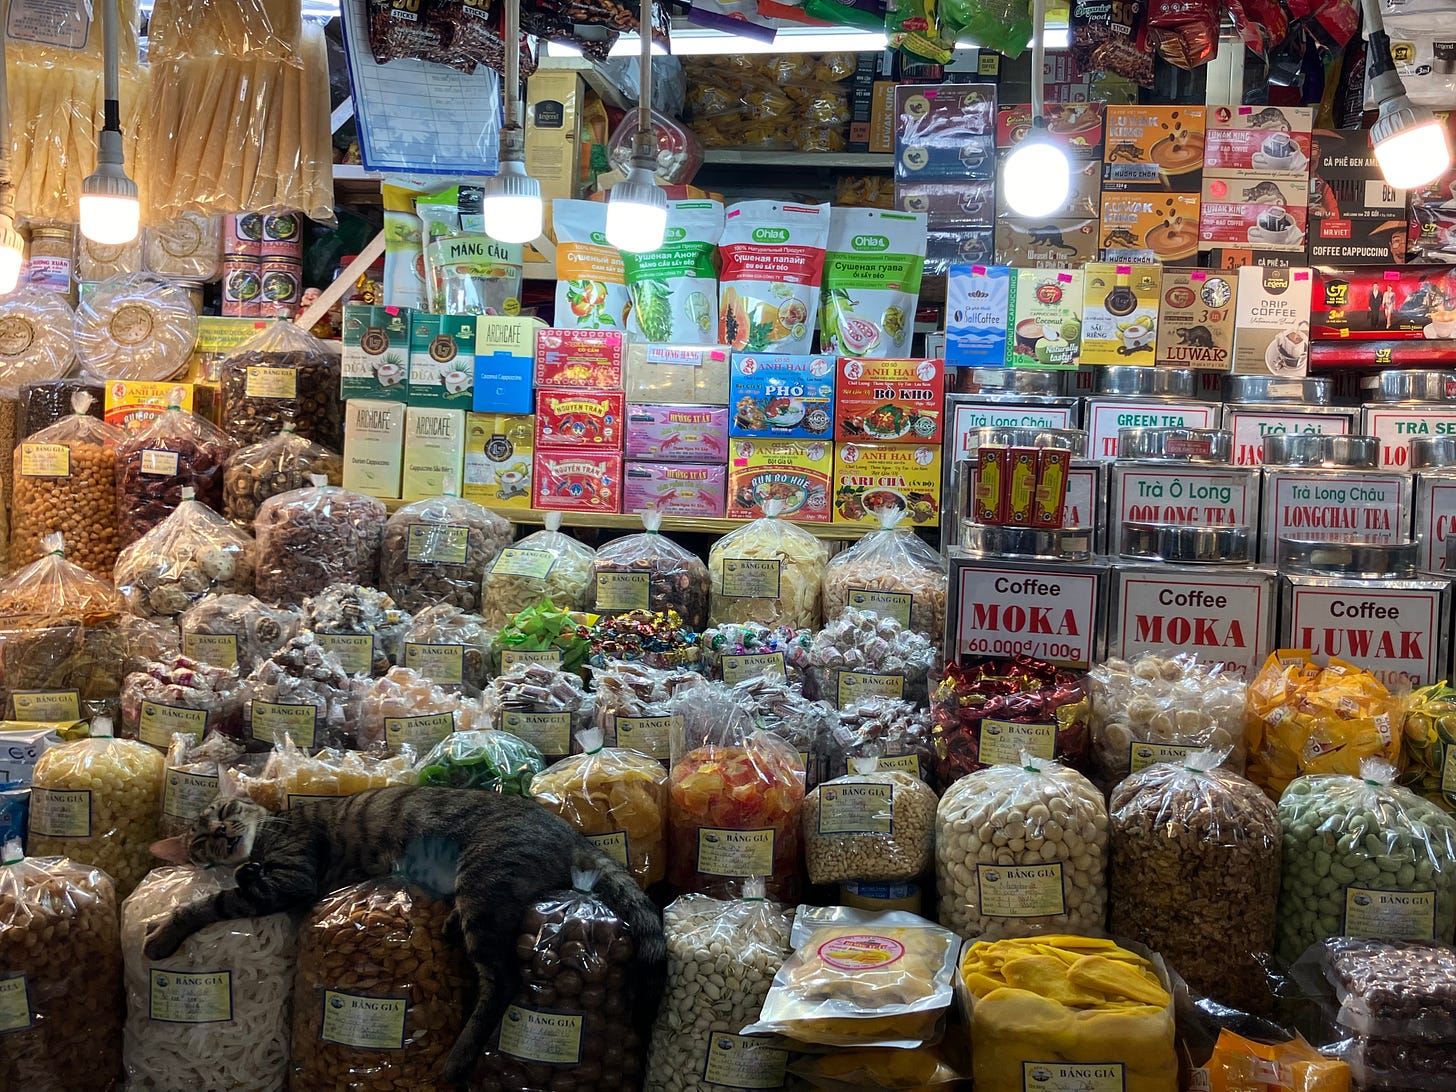 ベトナム・ホーチミンの市場。多くの食品が並ぶ写真。袋に入った食品の上でネコが寝ている。